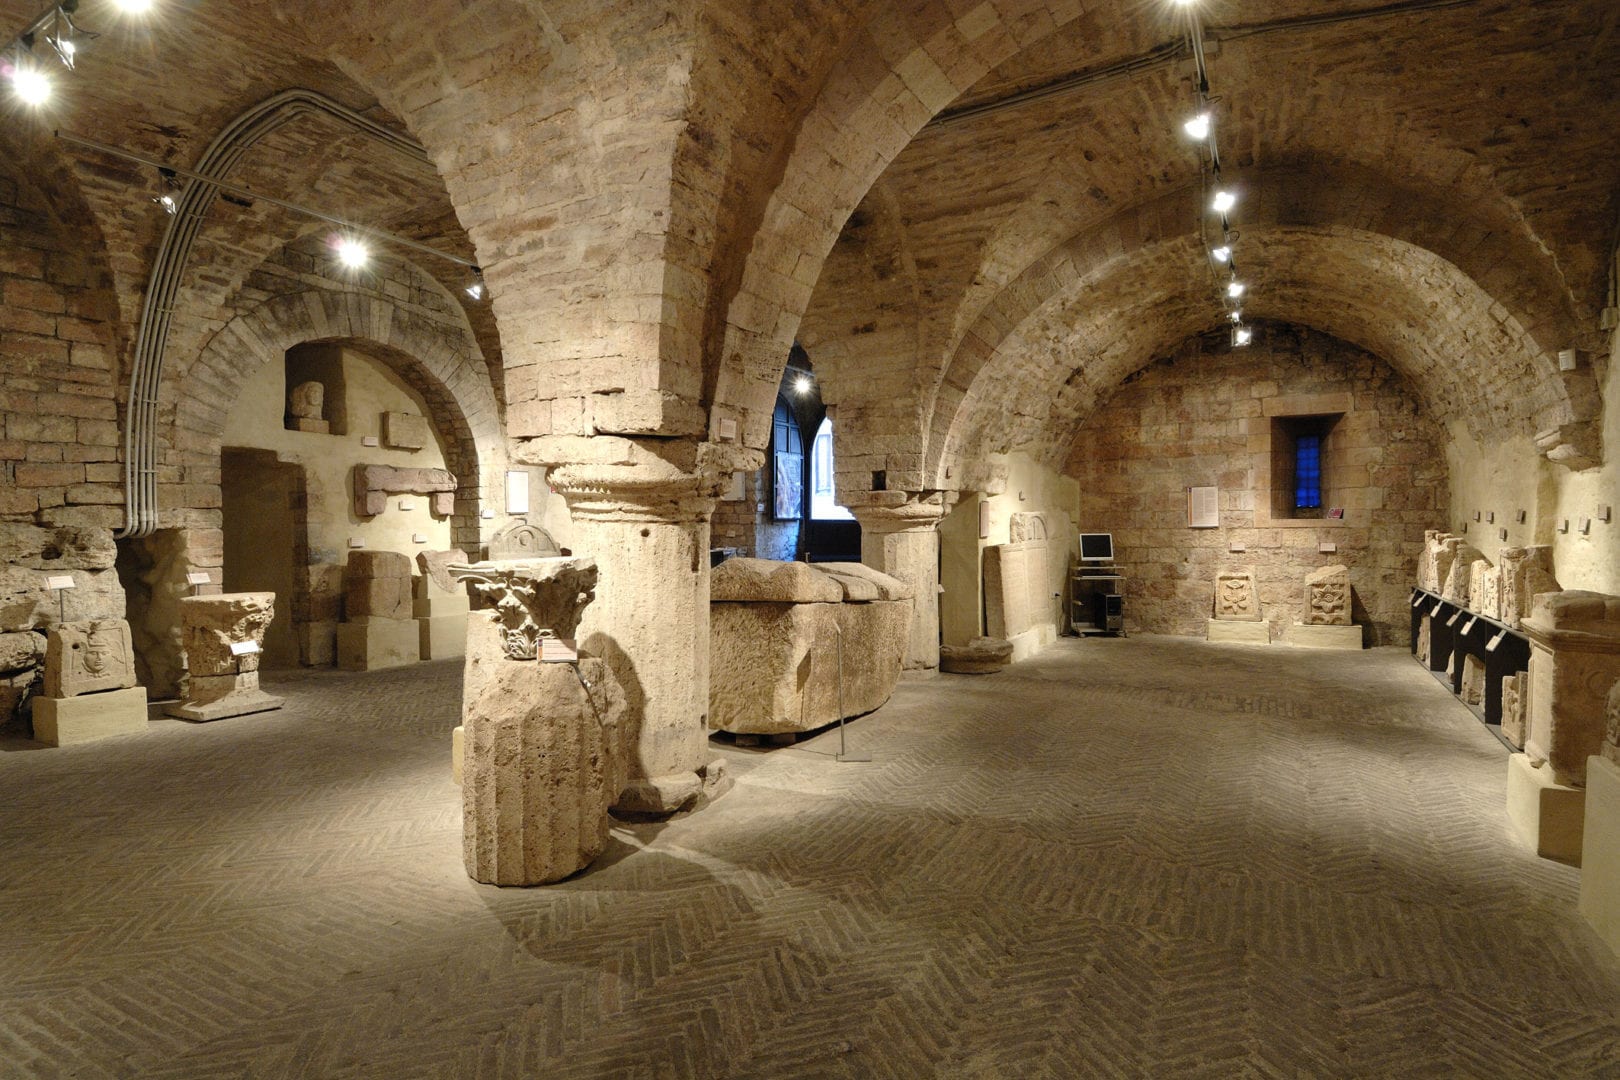 Foro-romano-e-collezione-archeologica-assiis-umbria-italia-cosa-vedere